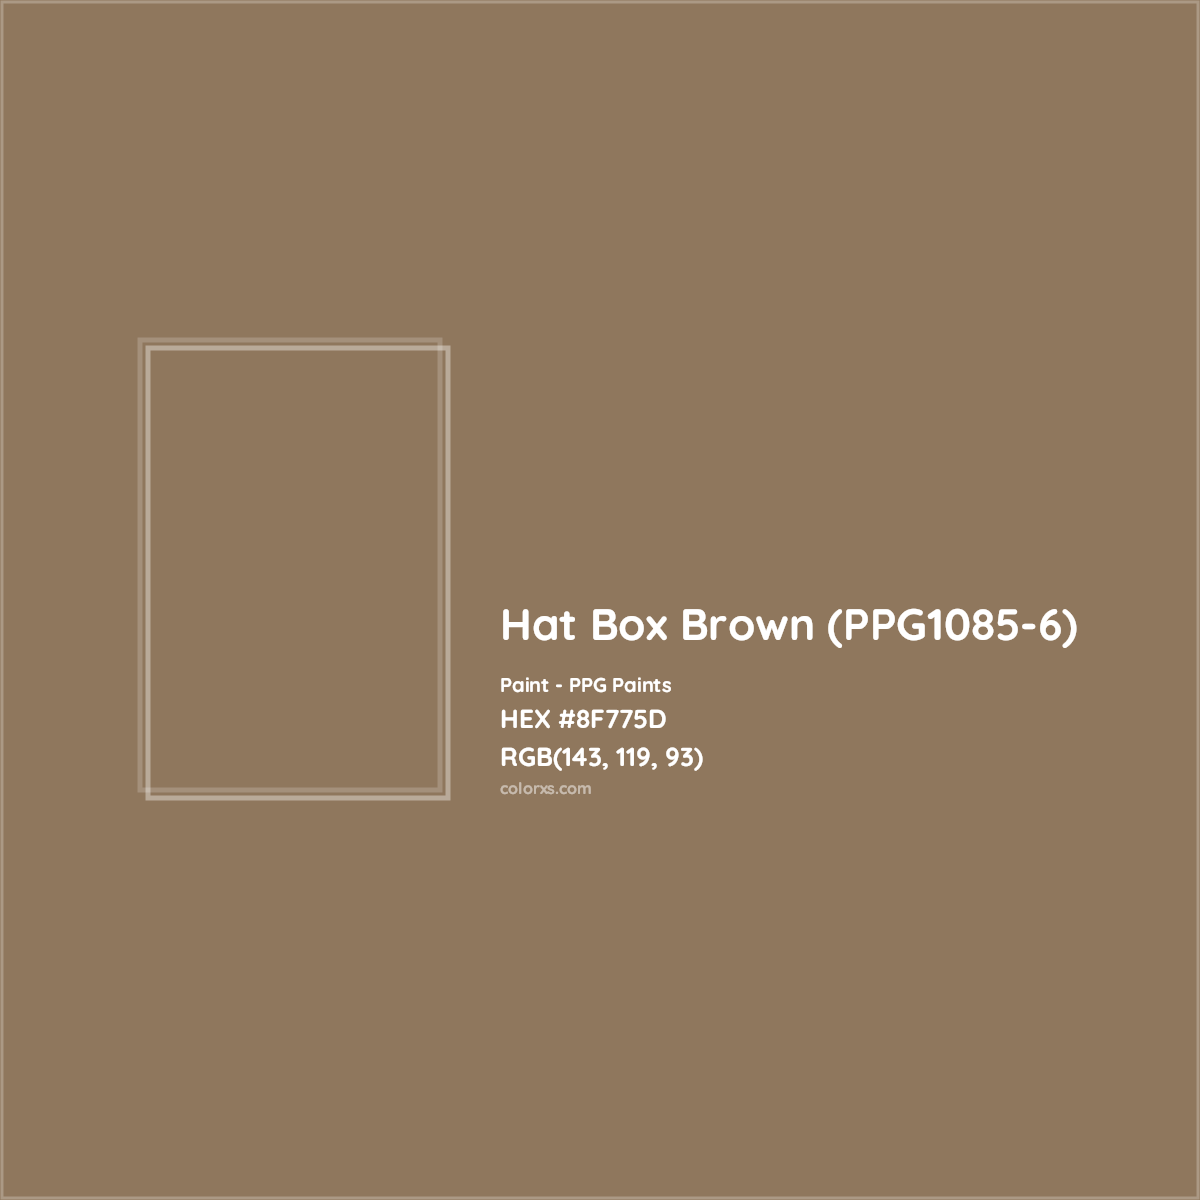 HEX #8F775D Hat Box Brown (PPG1085-6) Paint PPG Paints - Color Code